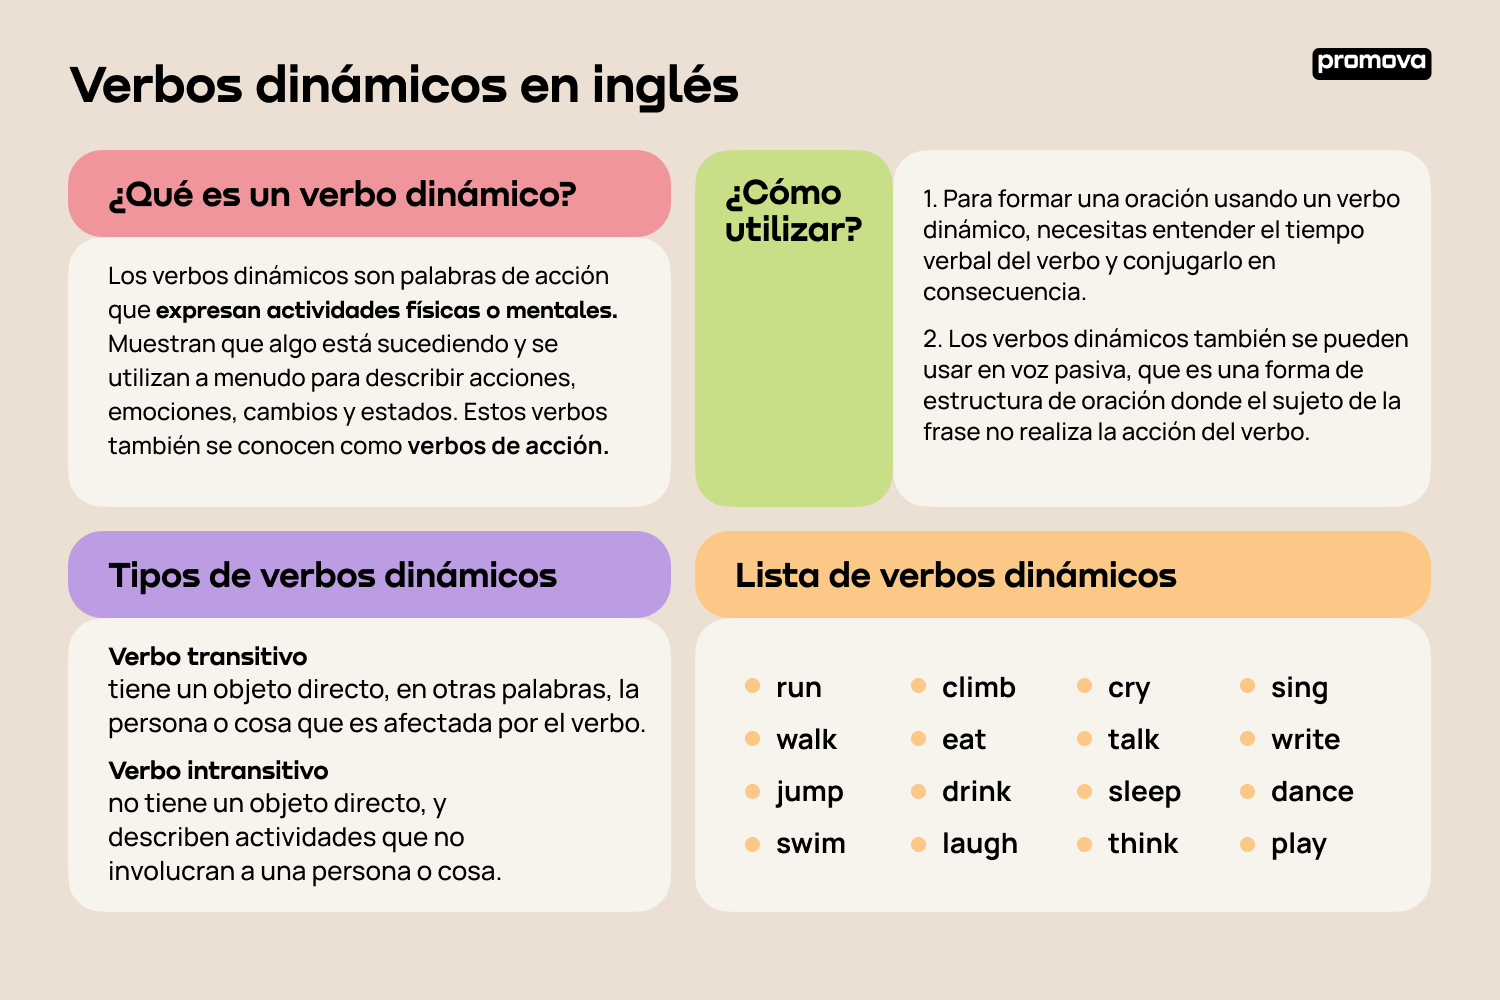 Domina la función y uso de los verbos dinámicos en inglés